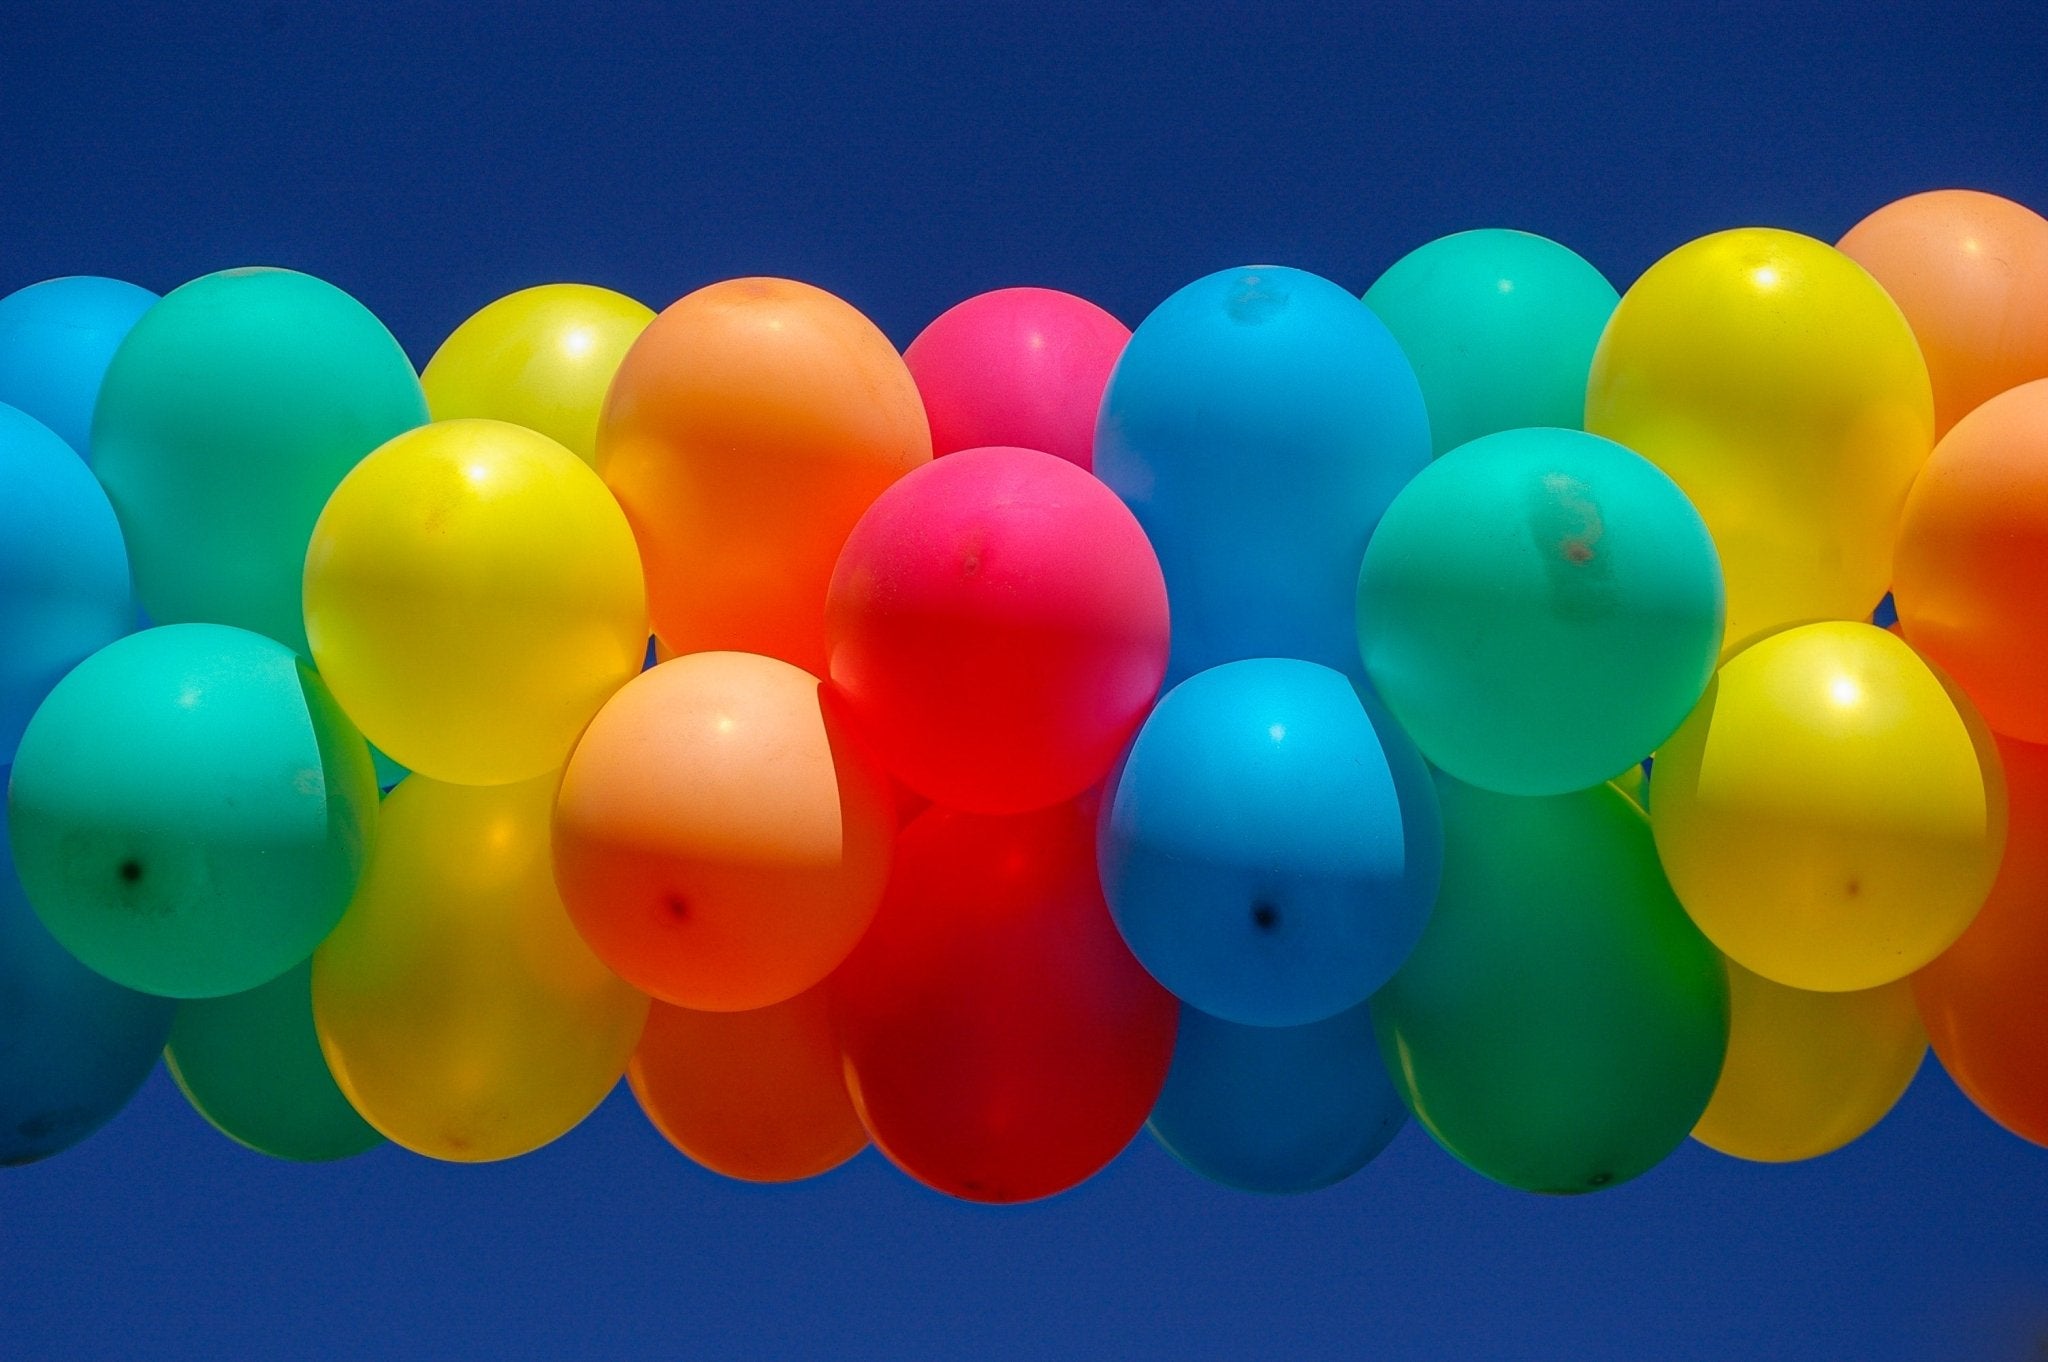 Lleva tu marca a lo más alto con los globos personalizados para empresas - Mis Globos